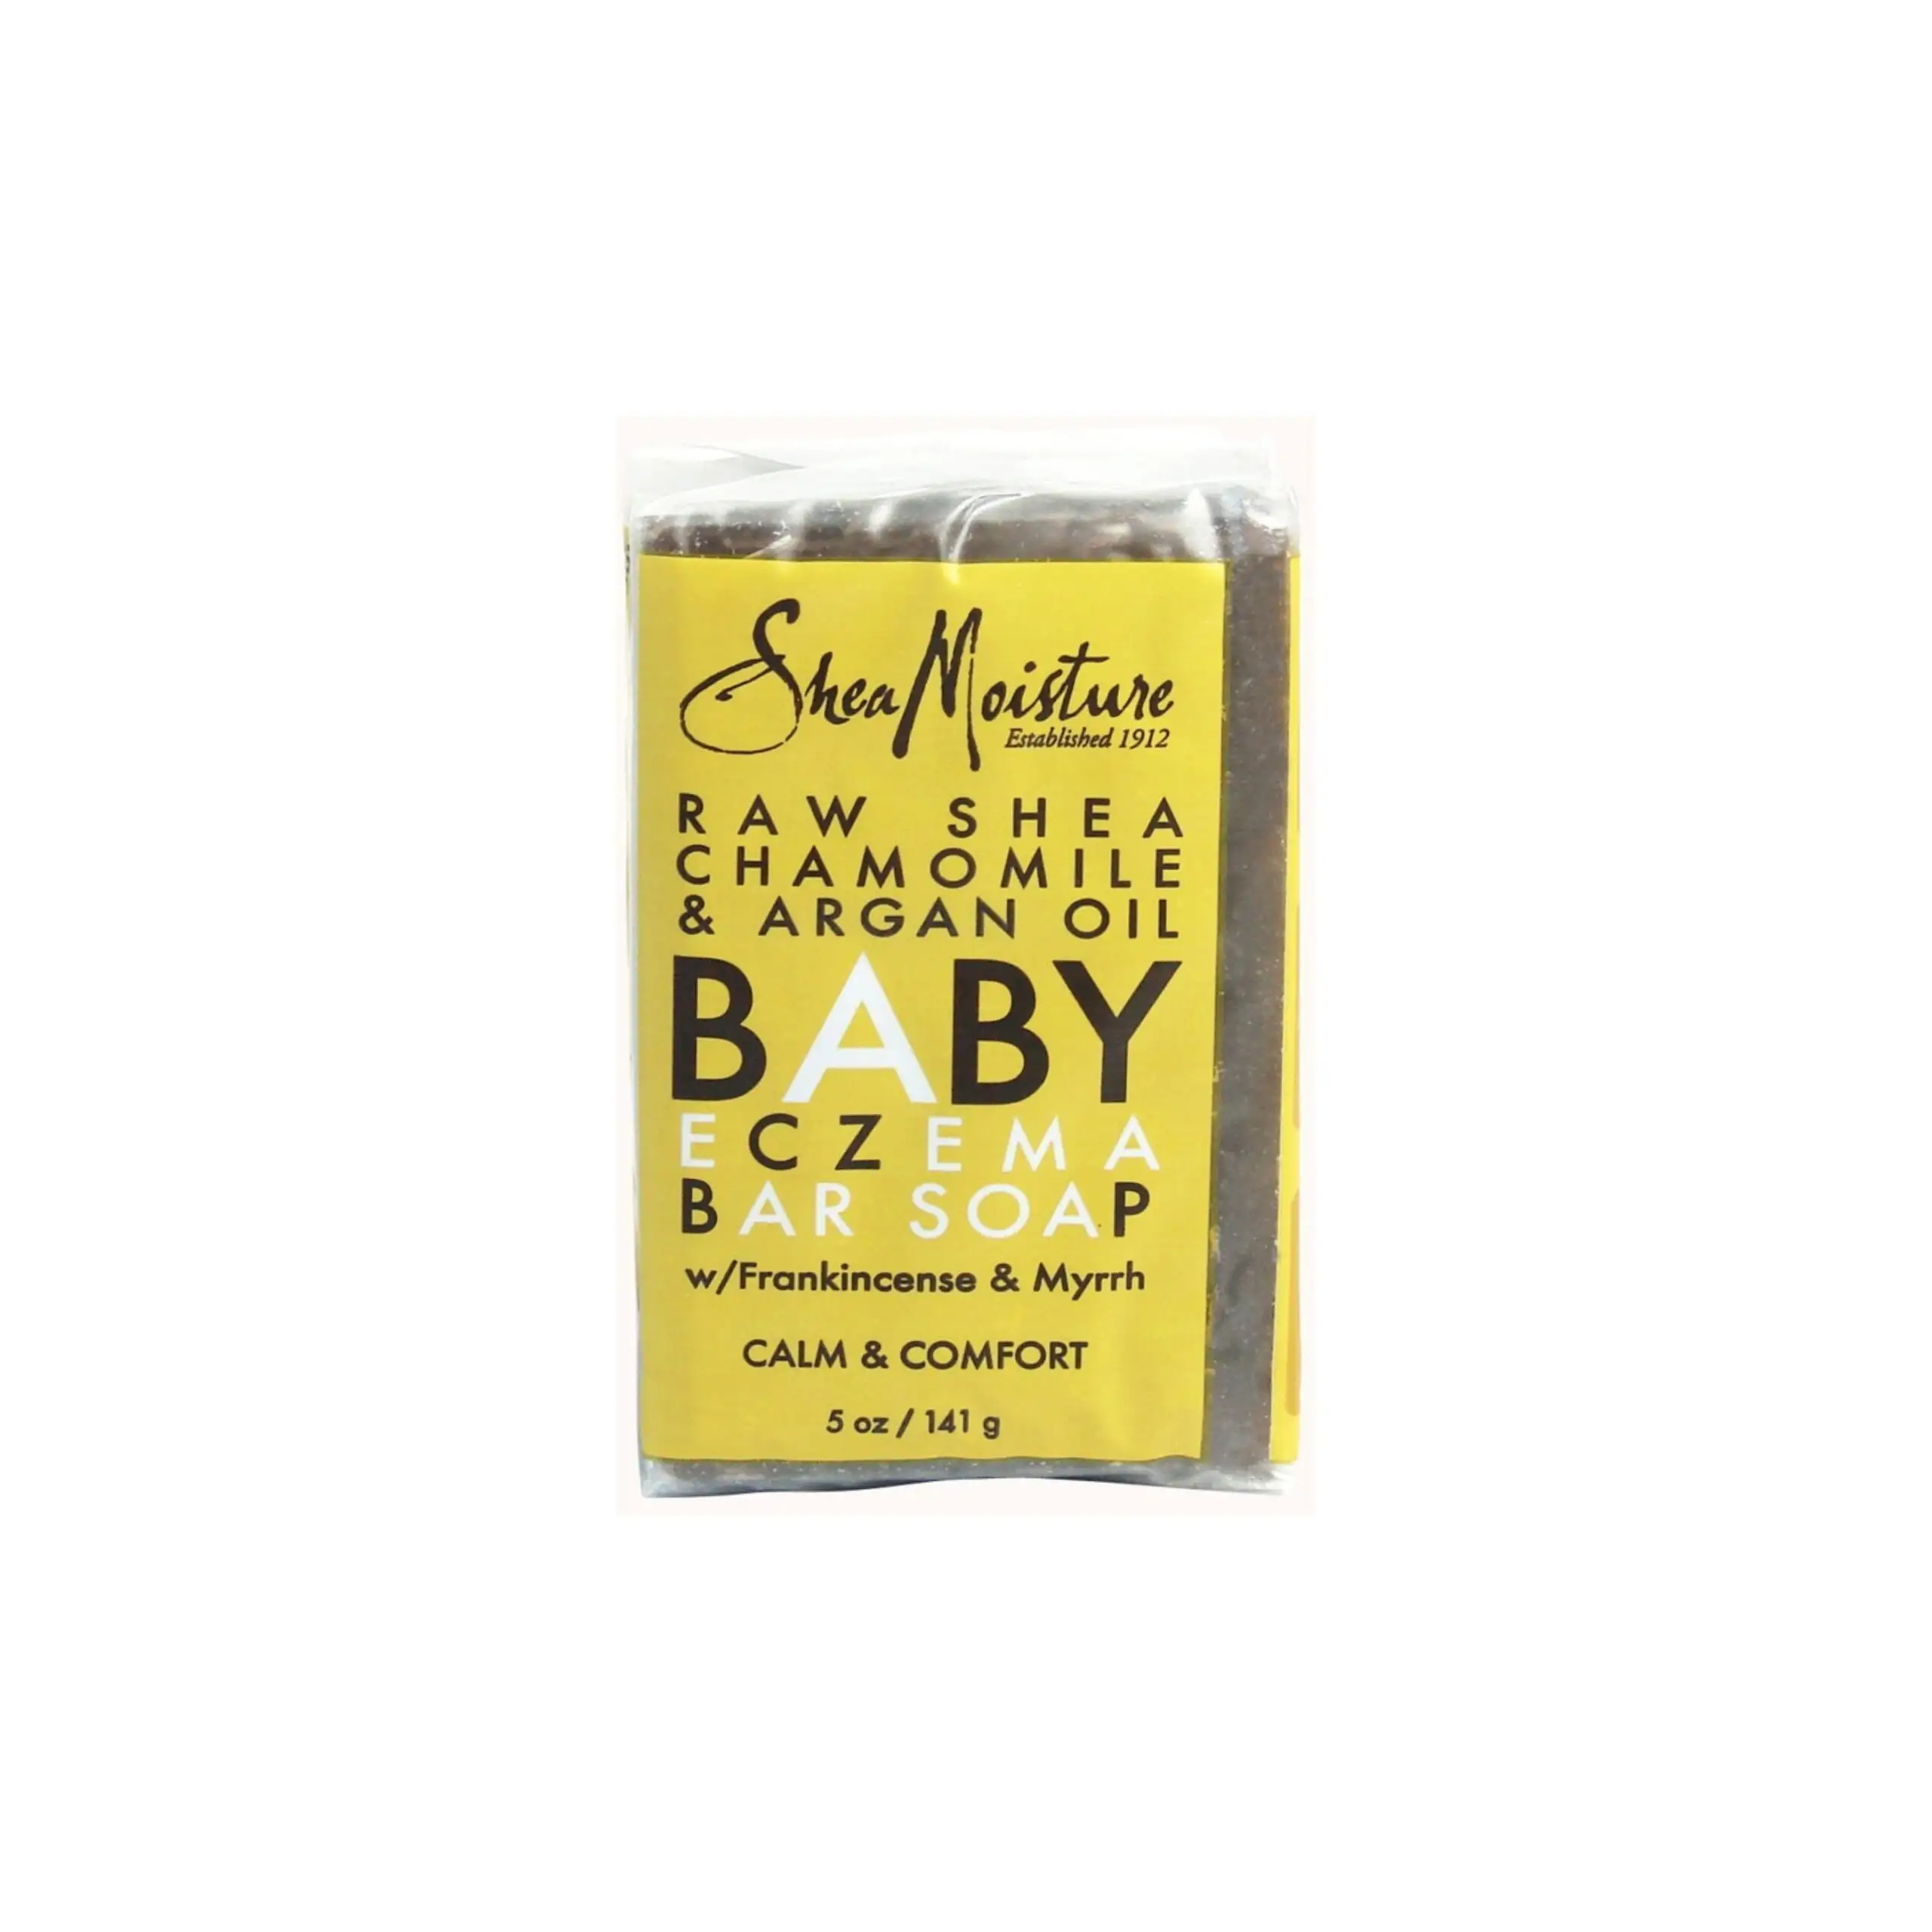 Shea moisture baby eczema soap 141g_5850. Bienvenue sur DIAYTAR SENEGAL - Où Choisir est un Voyage Sensoriel. Plongez dans notre catalogue et trouvez des produits qui éveillent vos sens et embellissent votre quotidien.